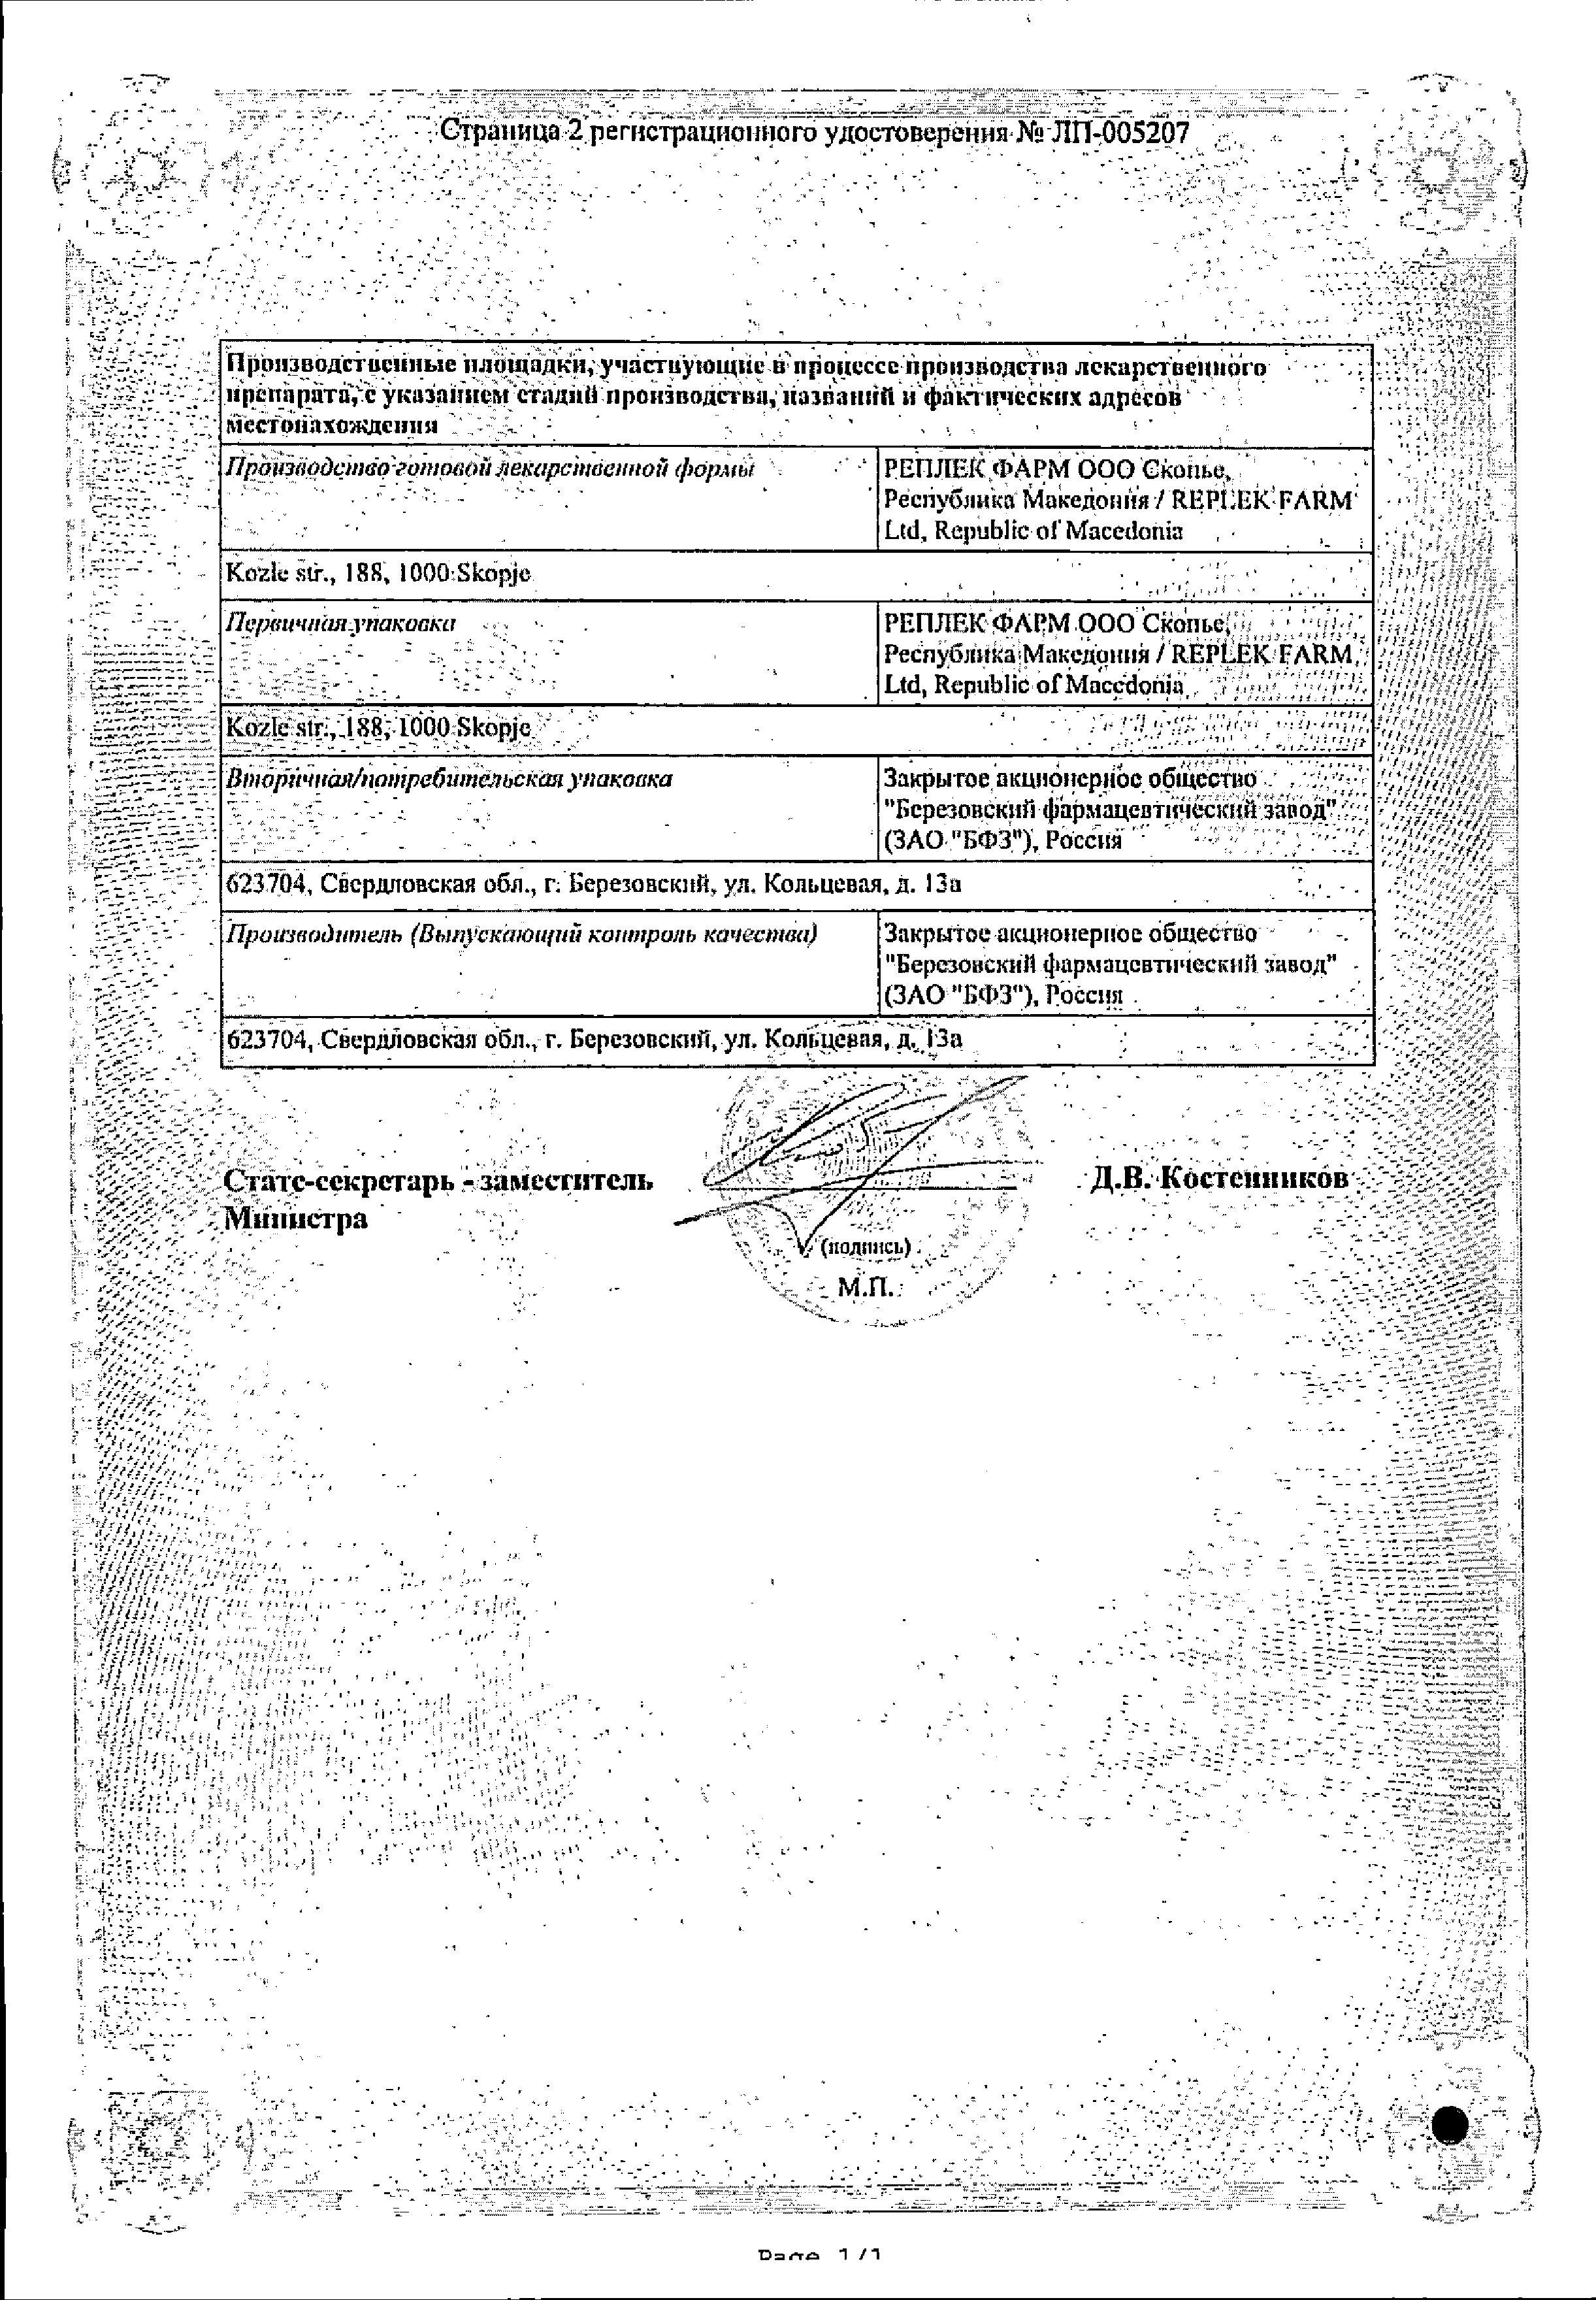 Монтелукаст сертификат